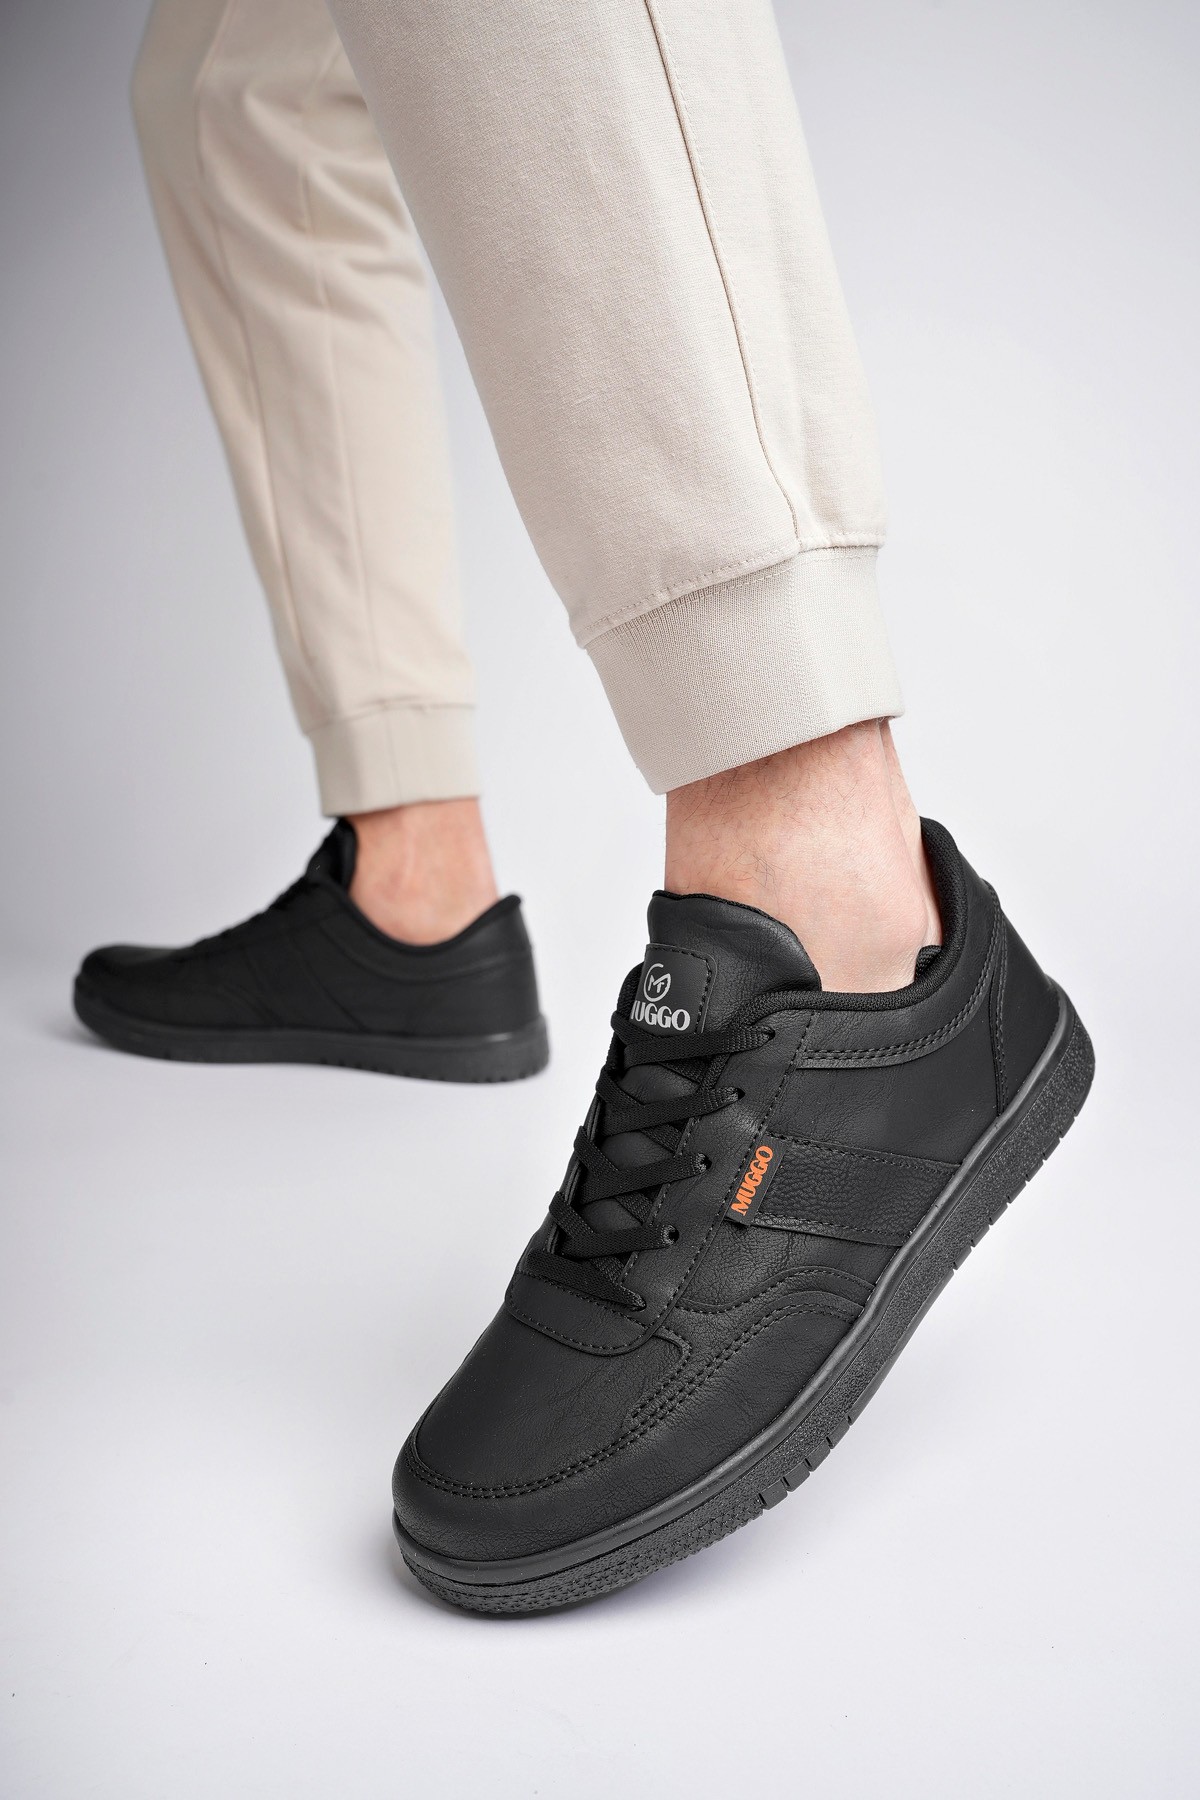 Muggo JOEL Garantili Erkek Günlük Casual Bağcıklı Sneaker Spor Ayakkabı